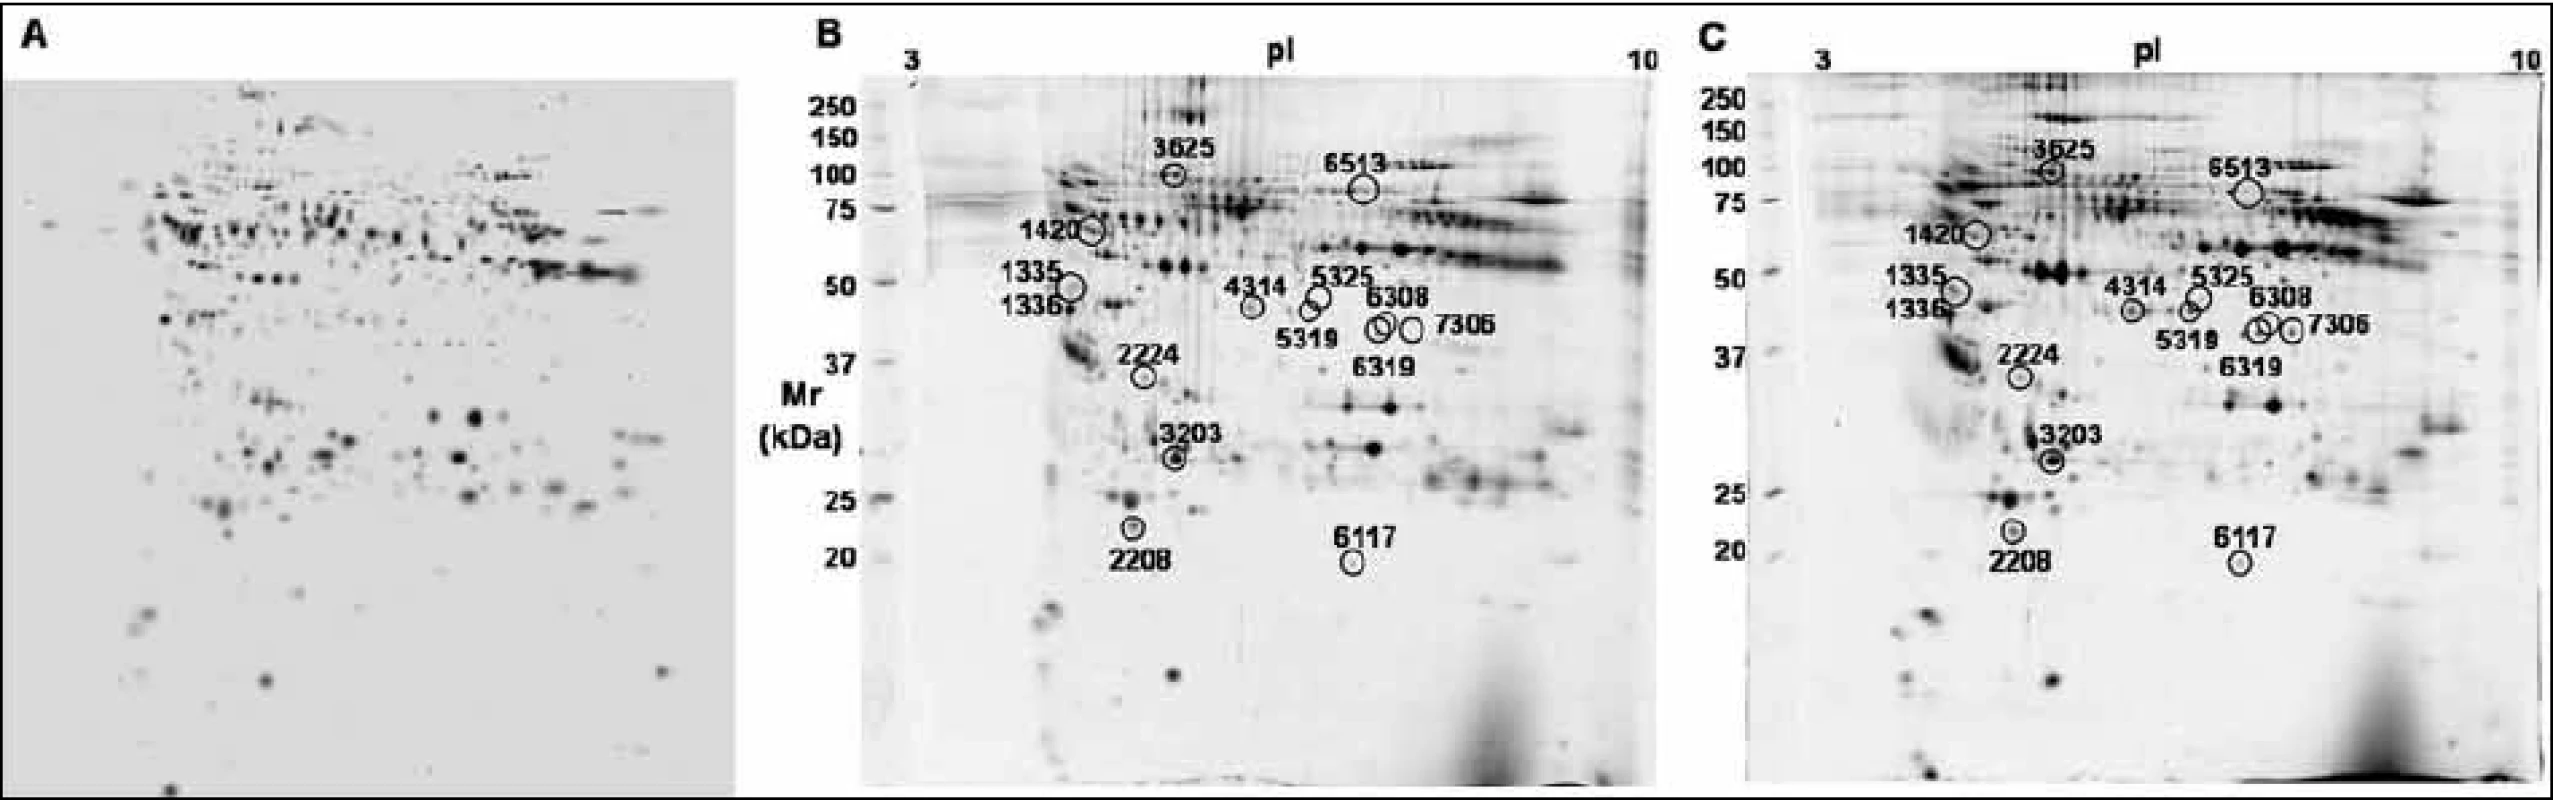 Ukázky záznamu 2-DE analýzy proteinů od pacientů nemocných mnohočetným myelomem po frakcionaci krevní plazmy metodou ProteoMiner. (A) Syntetický obraz 2-DE tzv. Master gel normalizovaných dat všech 36 2-DE gelů. (B) Reprezentativní 2-DE gel proteinů krevní plazmy pacienta citlivého na léčbu bortezomibem. (C) Reprezentativní 2-DE gel proteinů krevní plazmy pacienta rezistentního na léčbu bortezomibem.